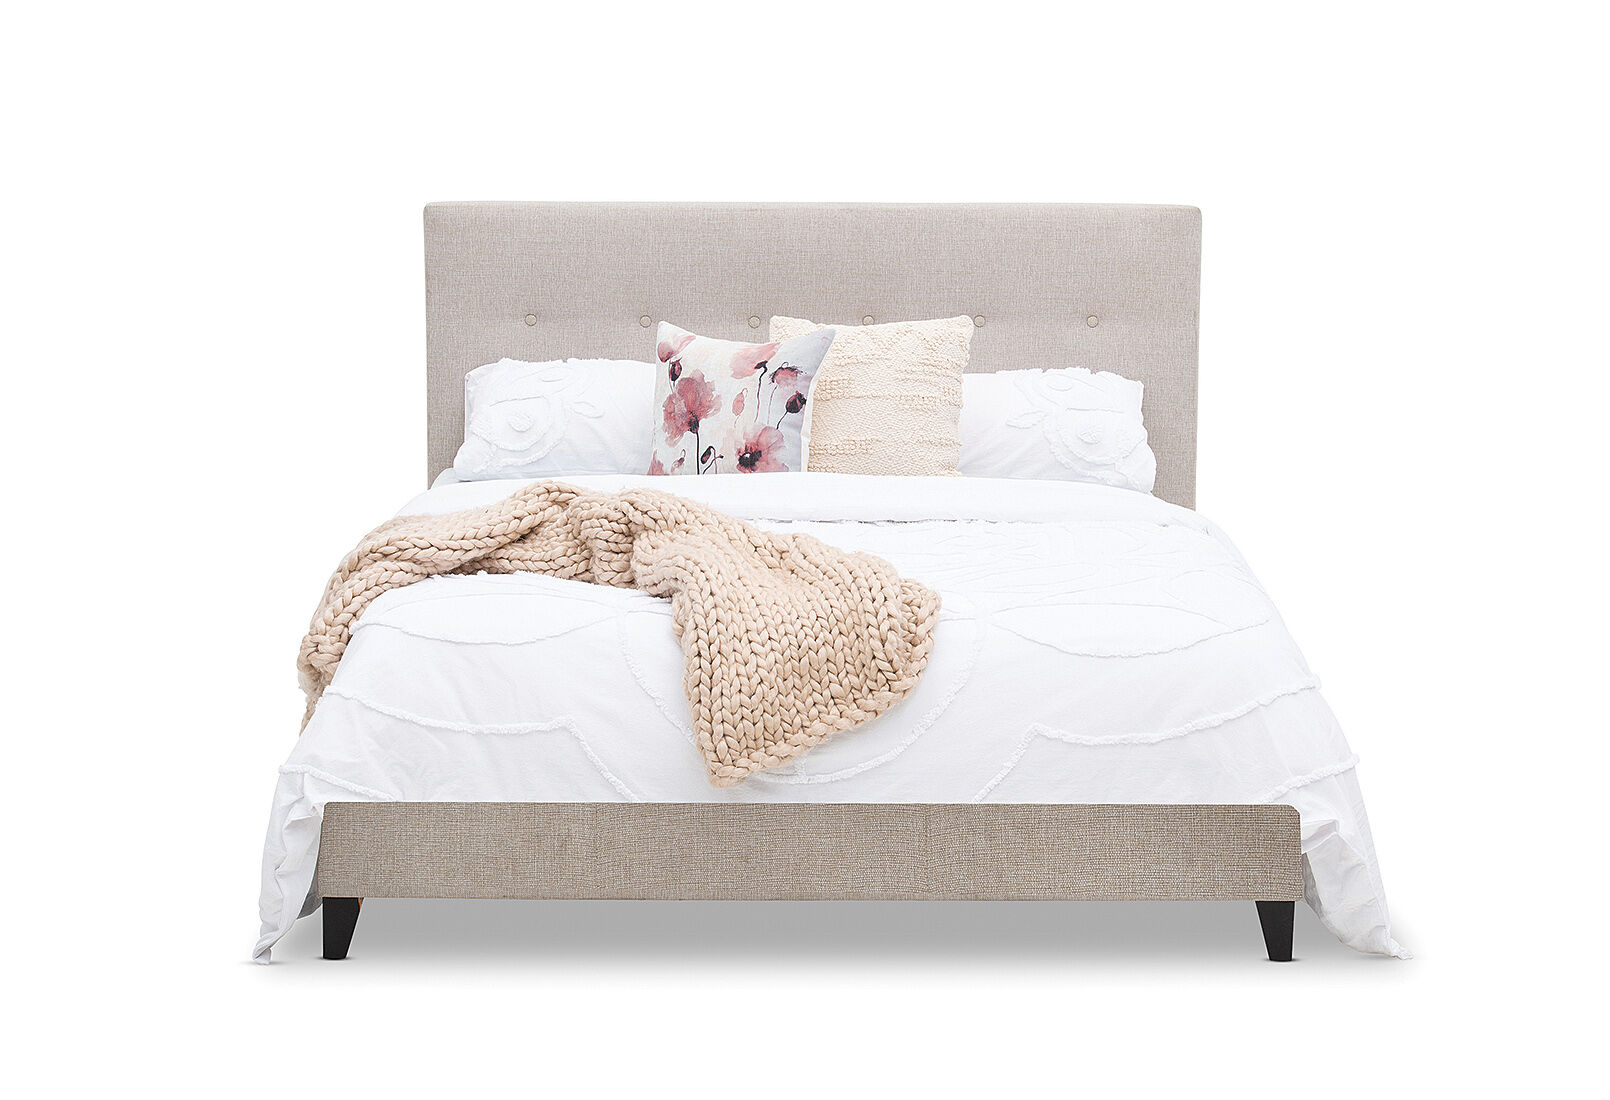 Sophie Mk2 Double Bed Amart Furniture